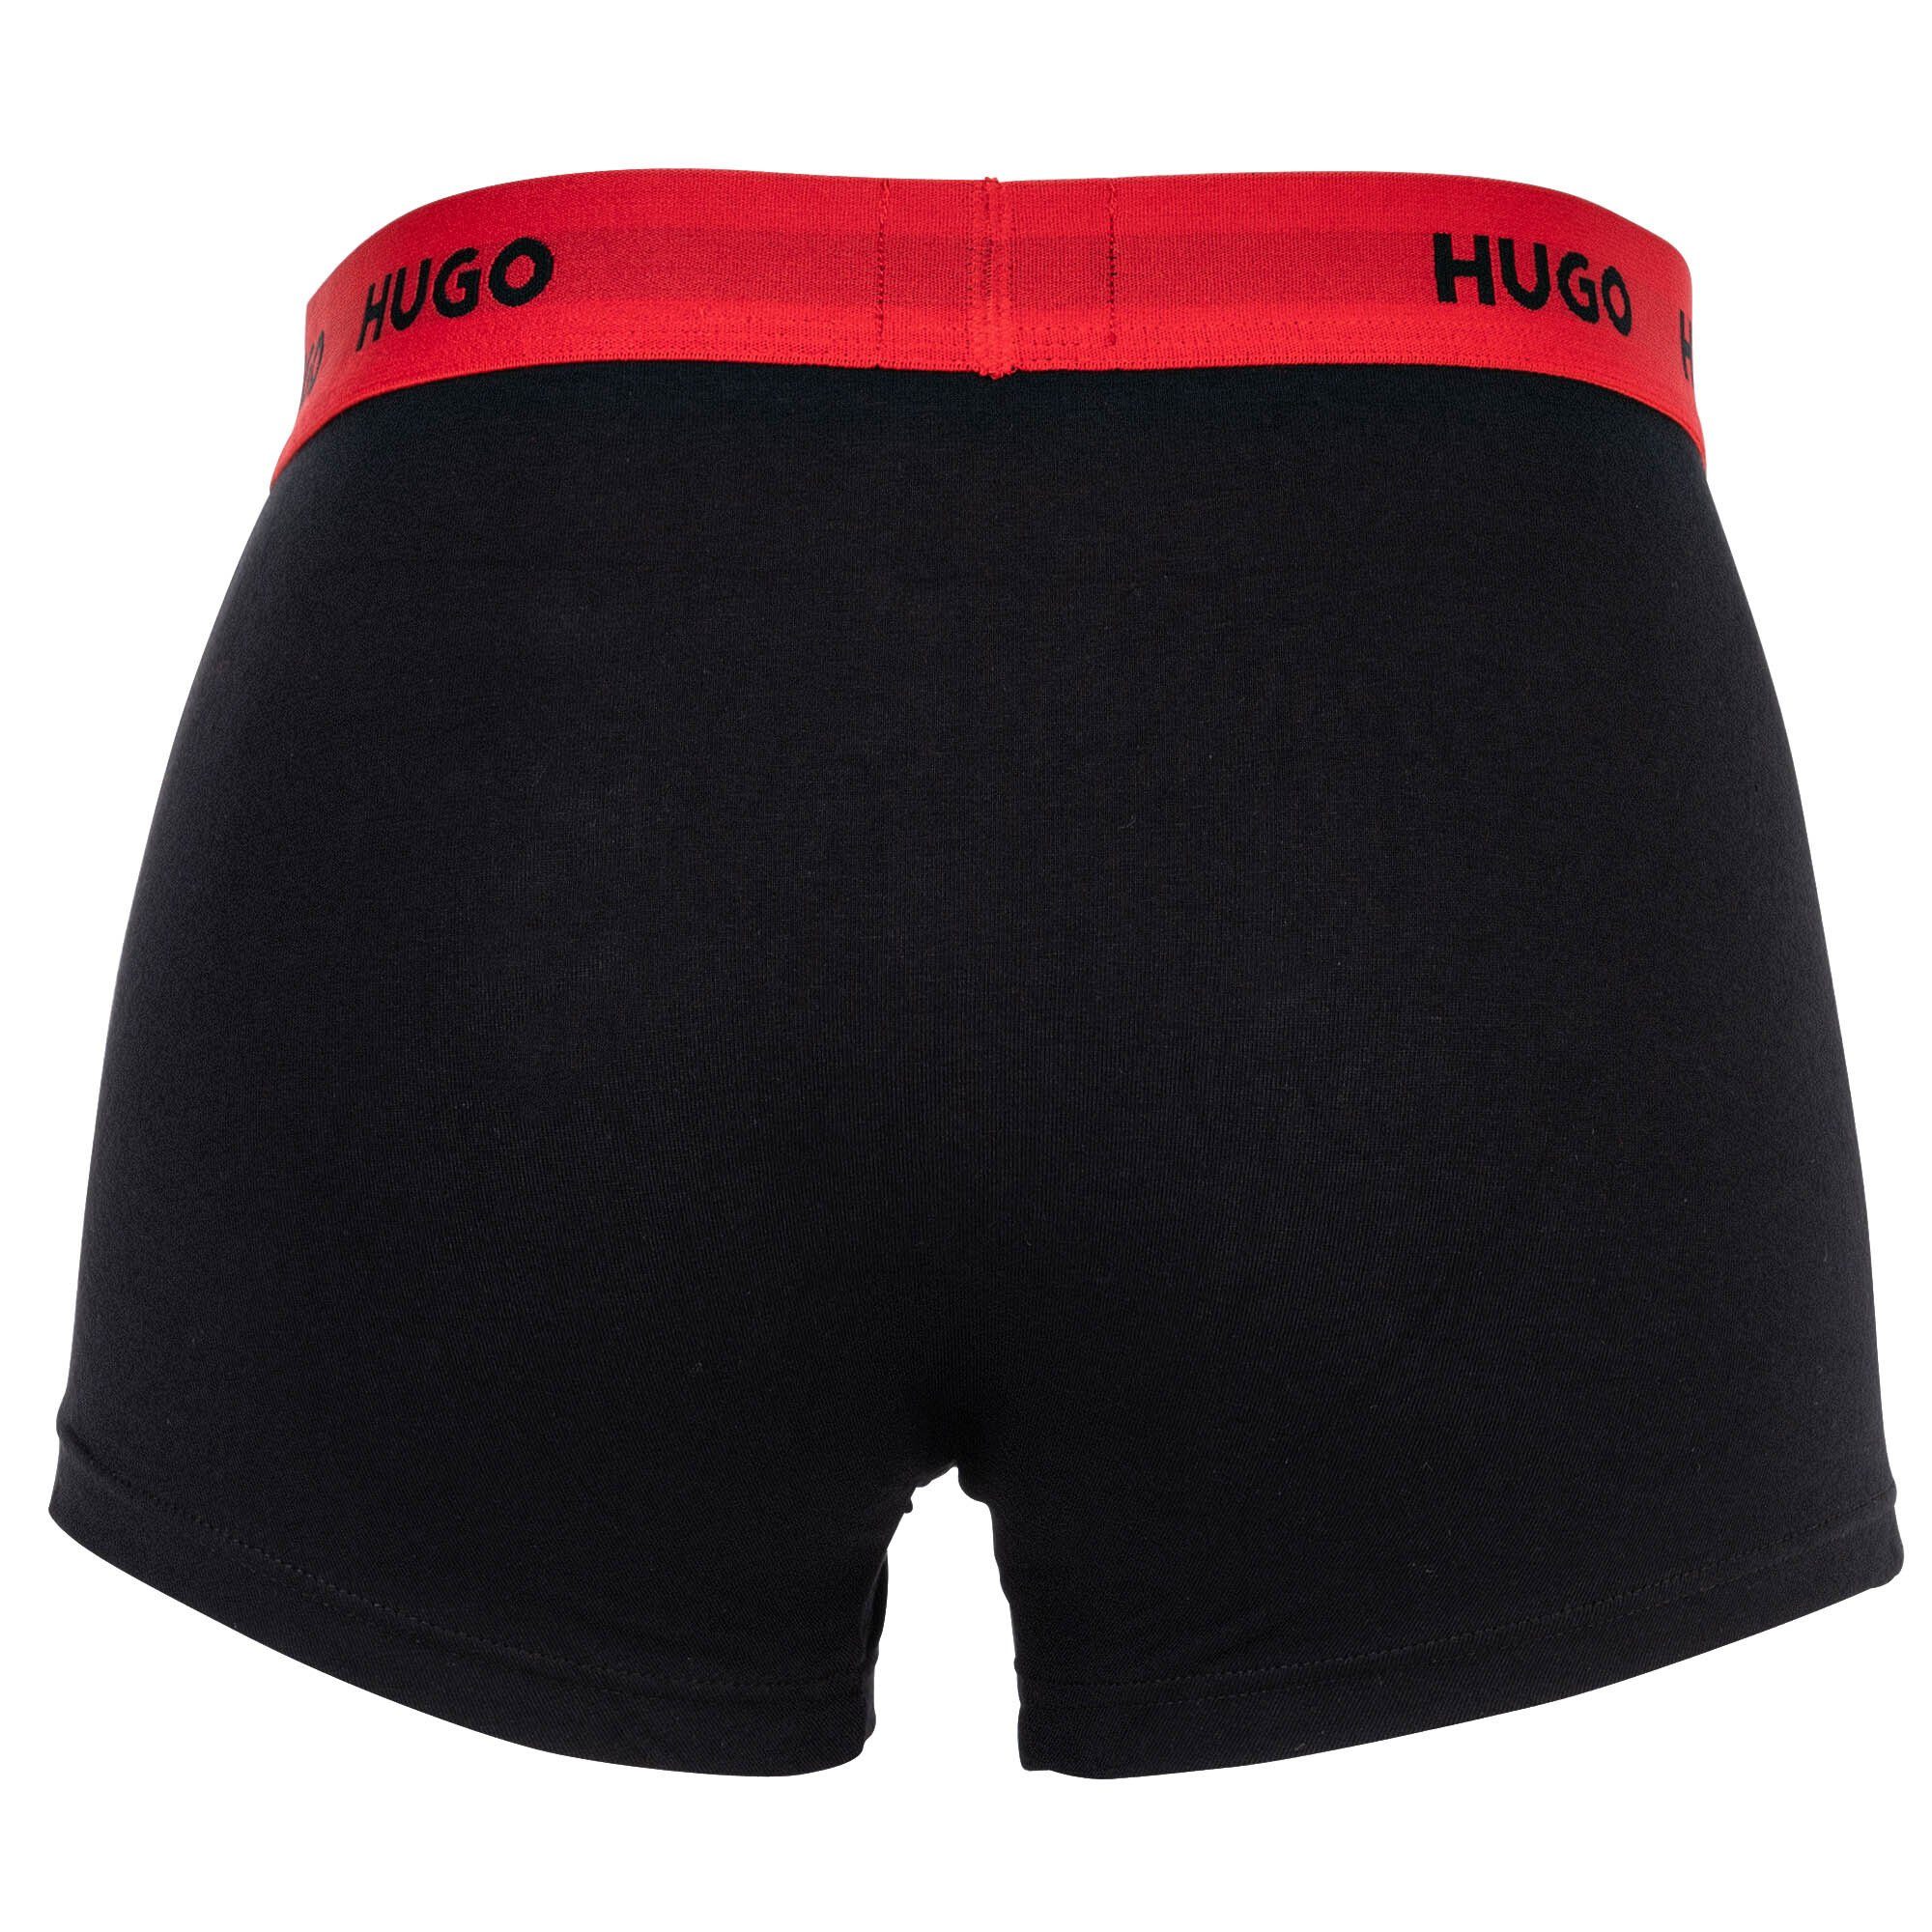 - Triplet Trunks Herren 3er HUGO Boxer Shorts, Pack Boxer Blau/Grün/Schwarz